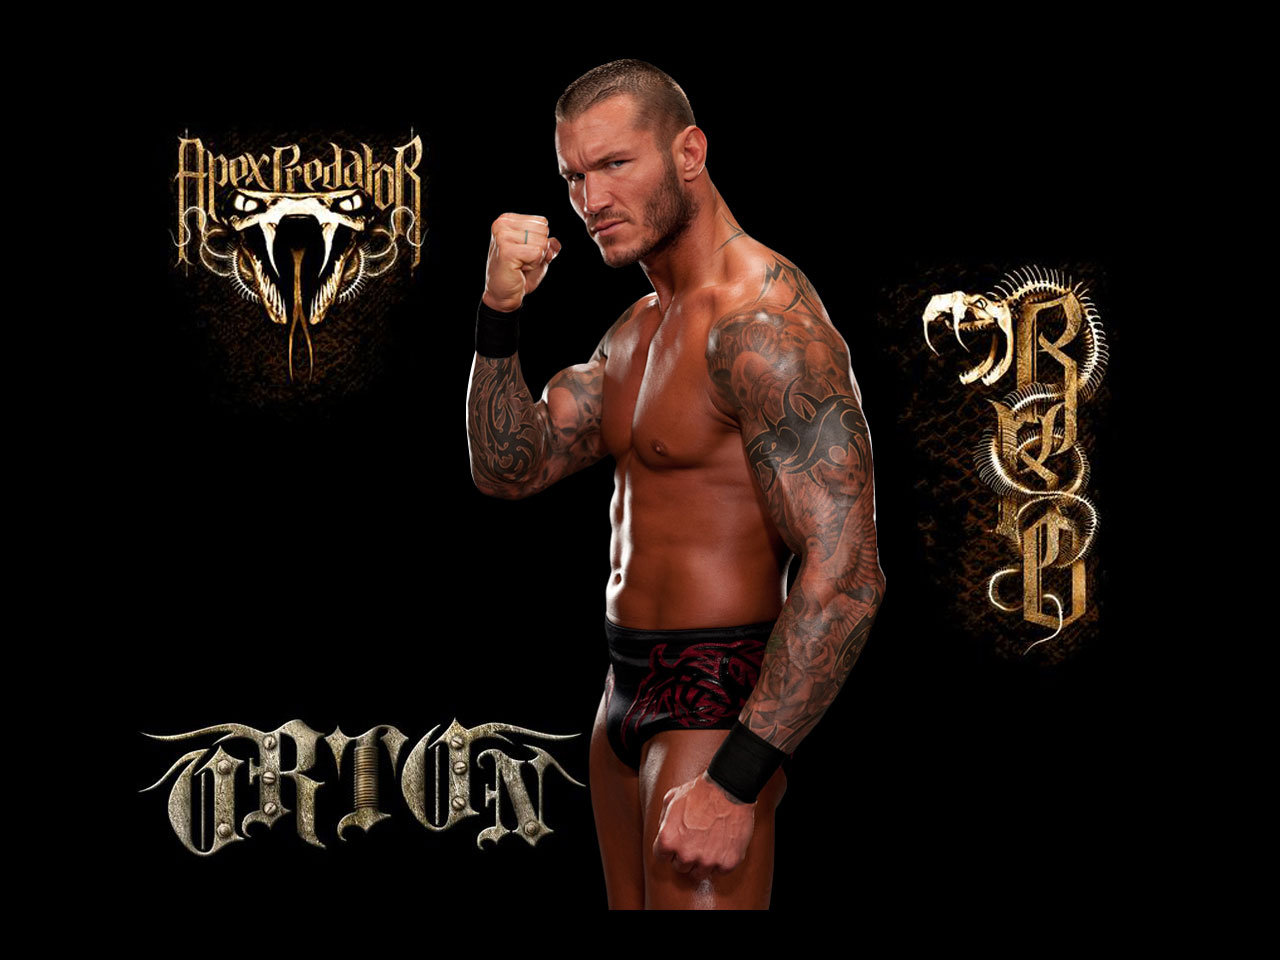 Champion Randy Orton Hd Wallpaper - Randy Orton - 1280x960 Wallpaper -  